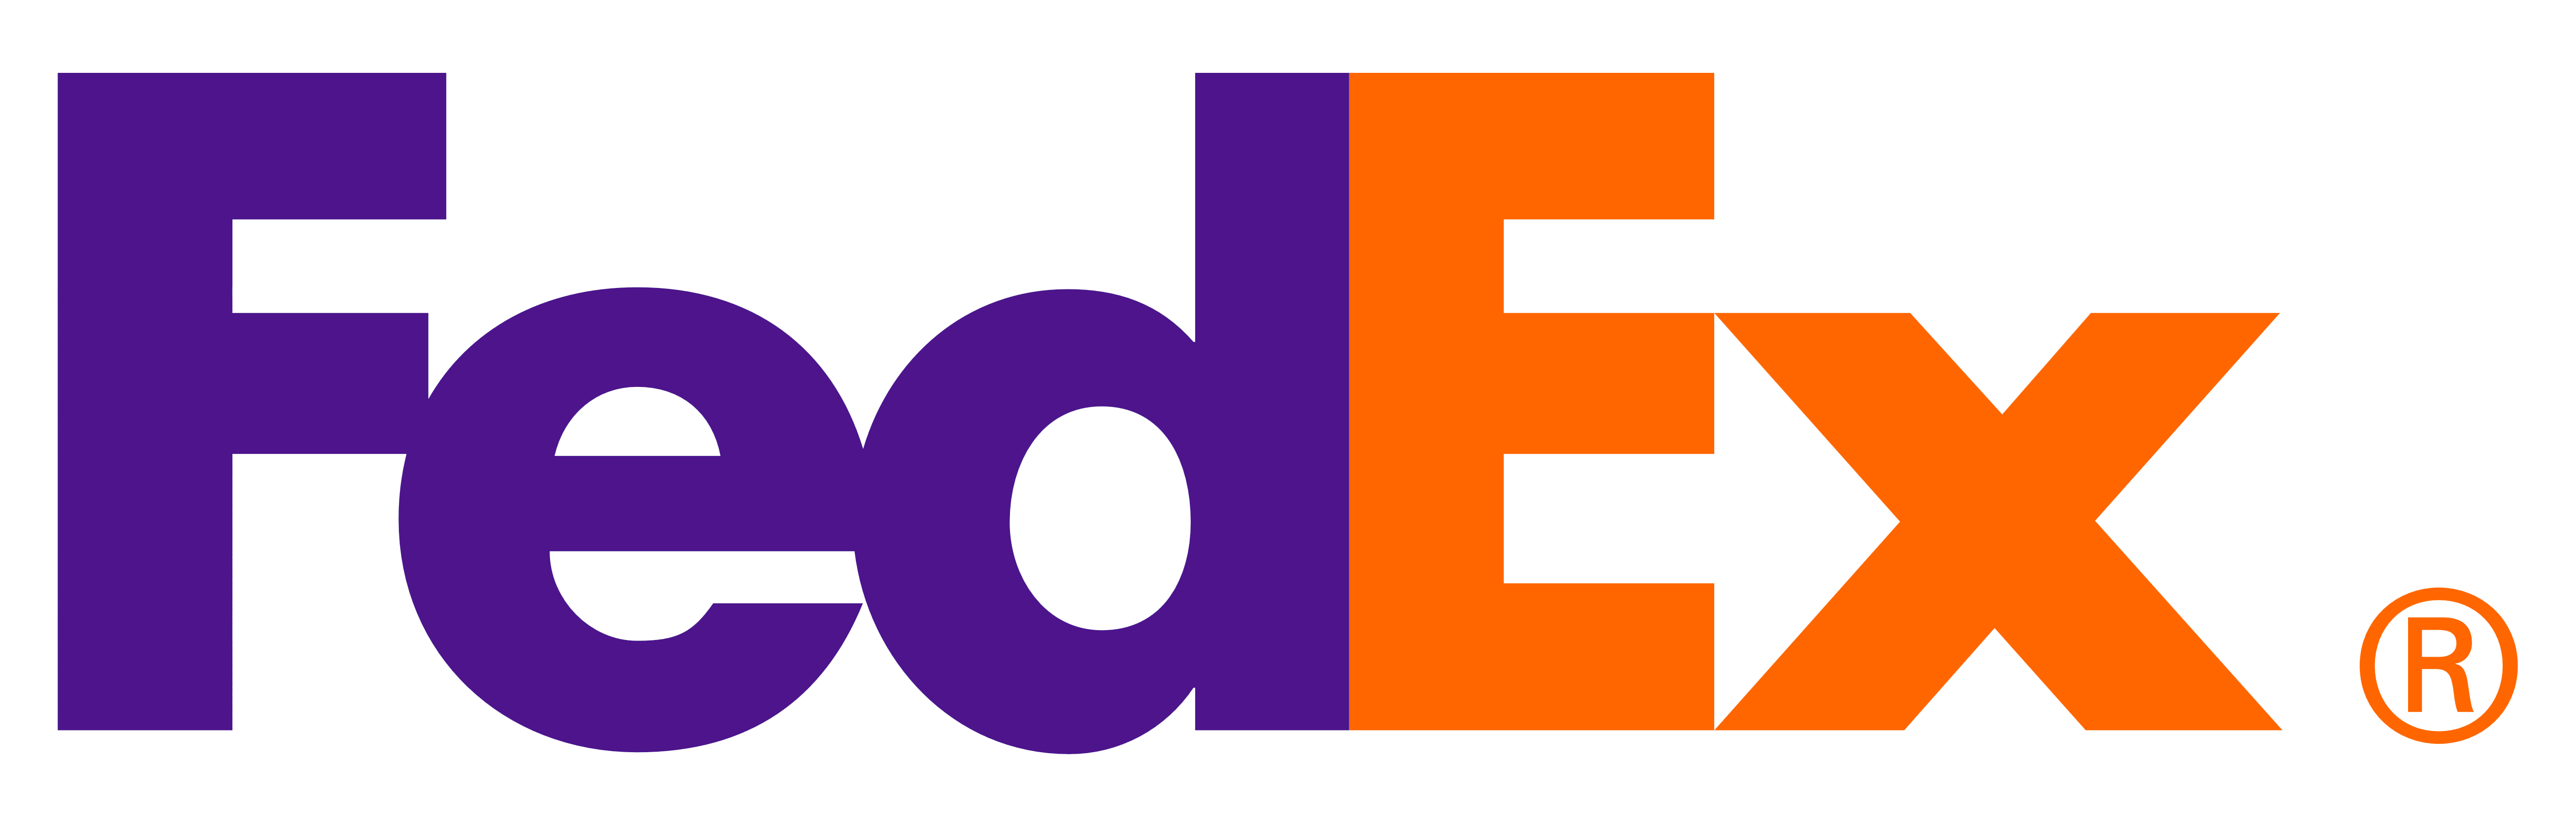 parceiro logo Fedex